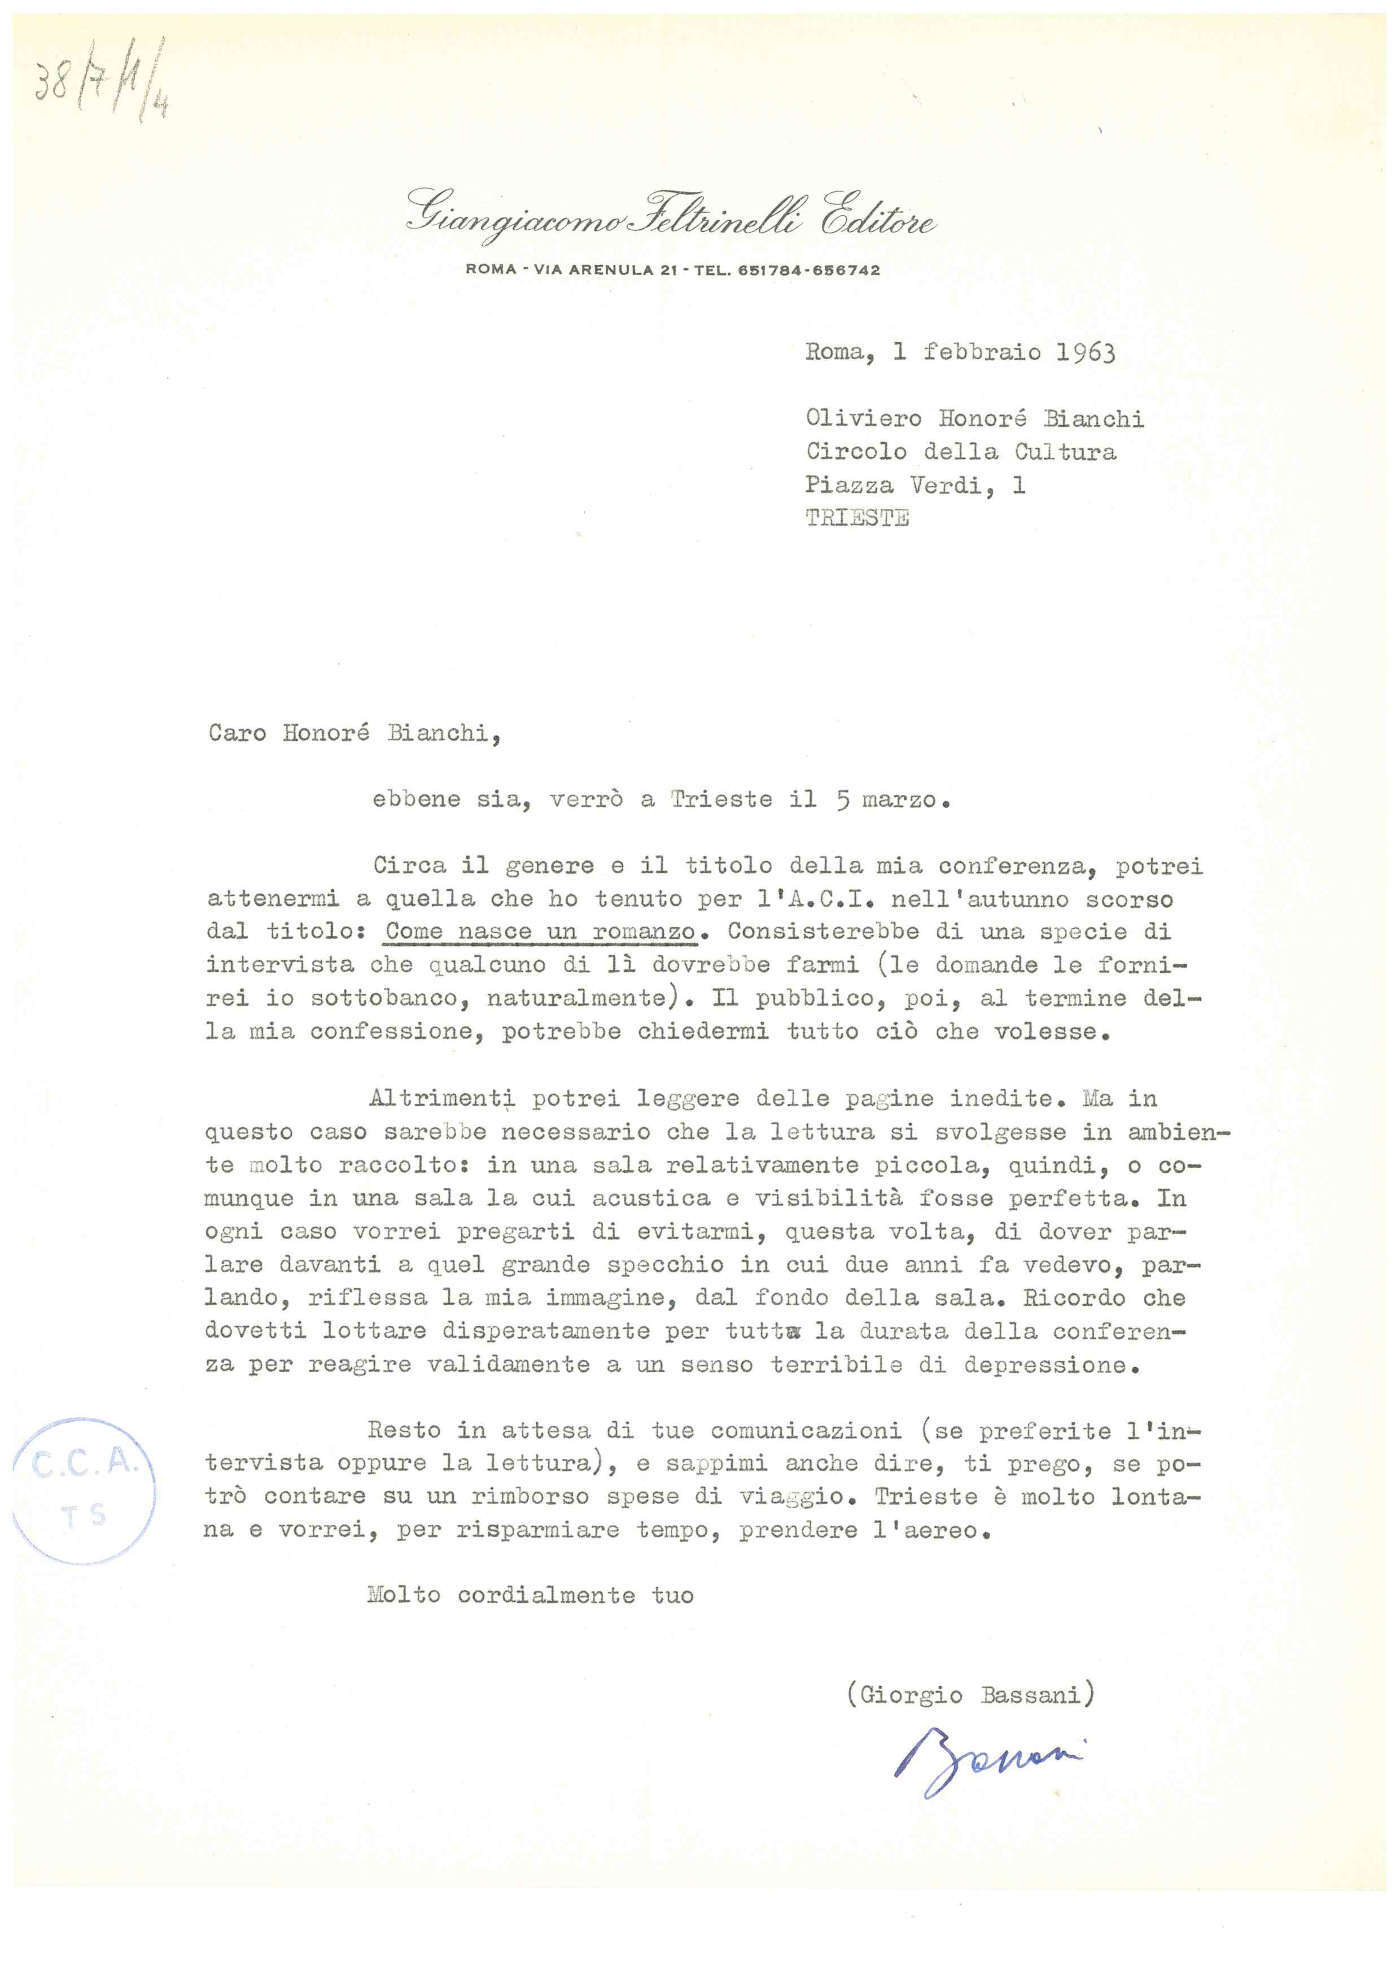 1963 03 12 Conferenza Bassani Giorgio